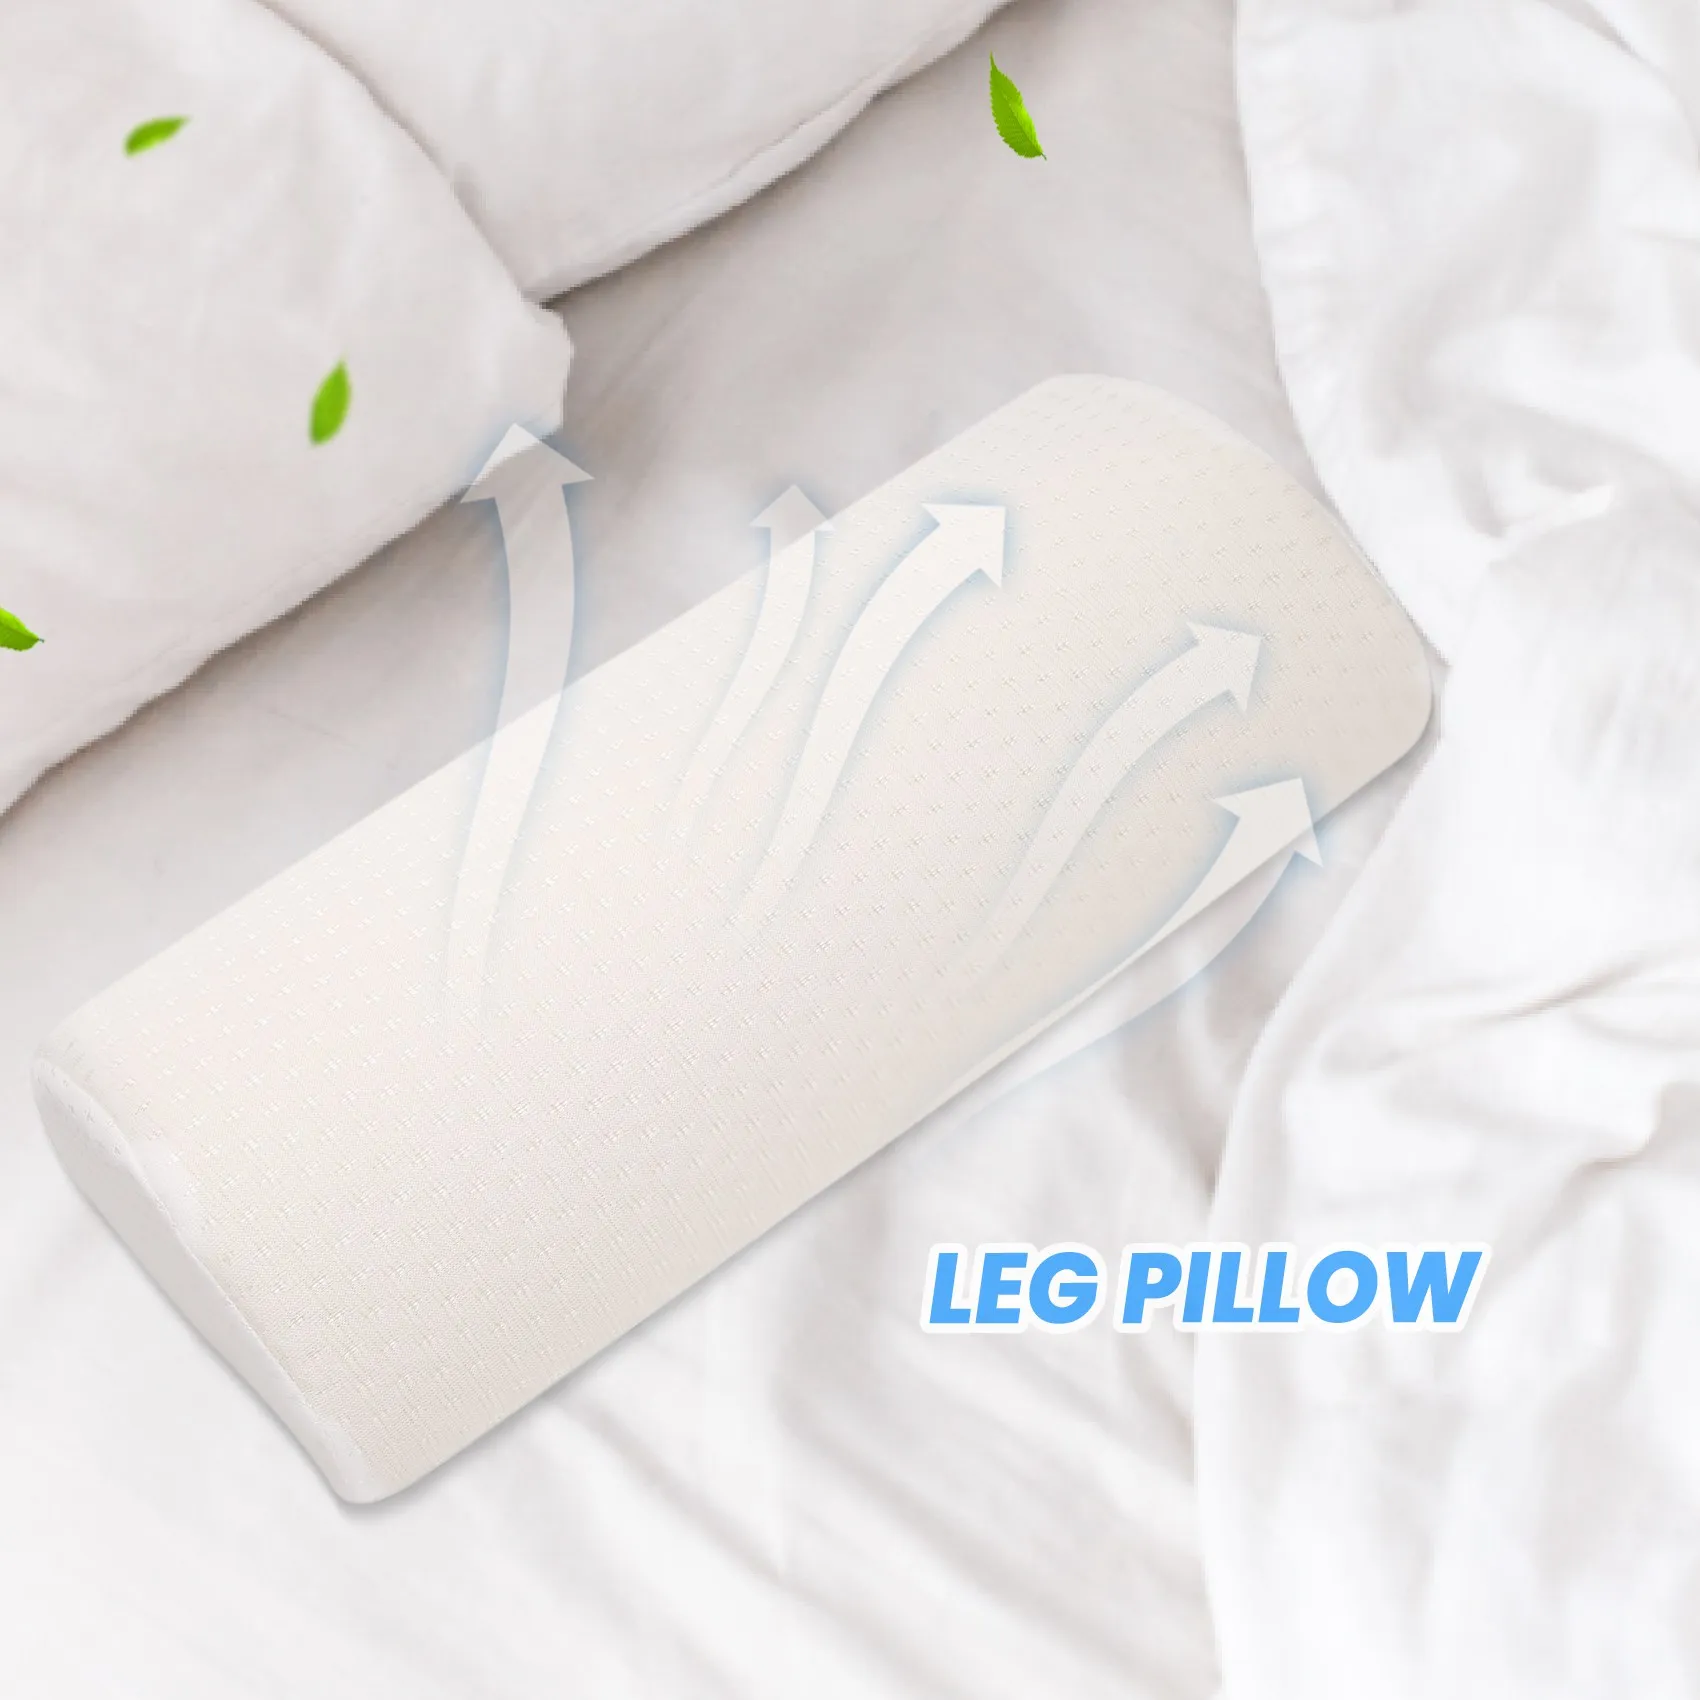 https://ae01.alicdn.com/kf/S71e8be6bdb314eaa939b4110d5cd80acv/Half-Moon-Pillows-Memory-Foam-Pillows-Gel-Leg-Pillows-Back-Pain-Knee-Pads-Knee-Pillows-Beautiful.jpg